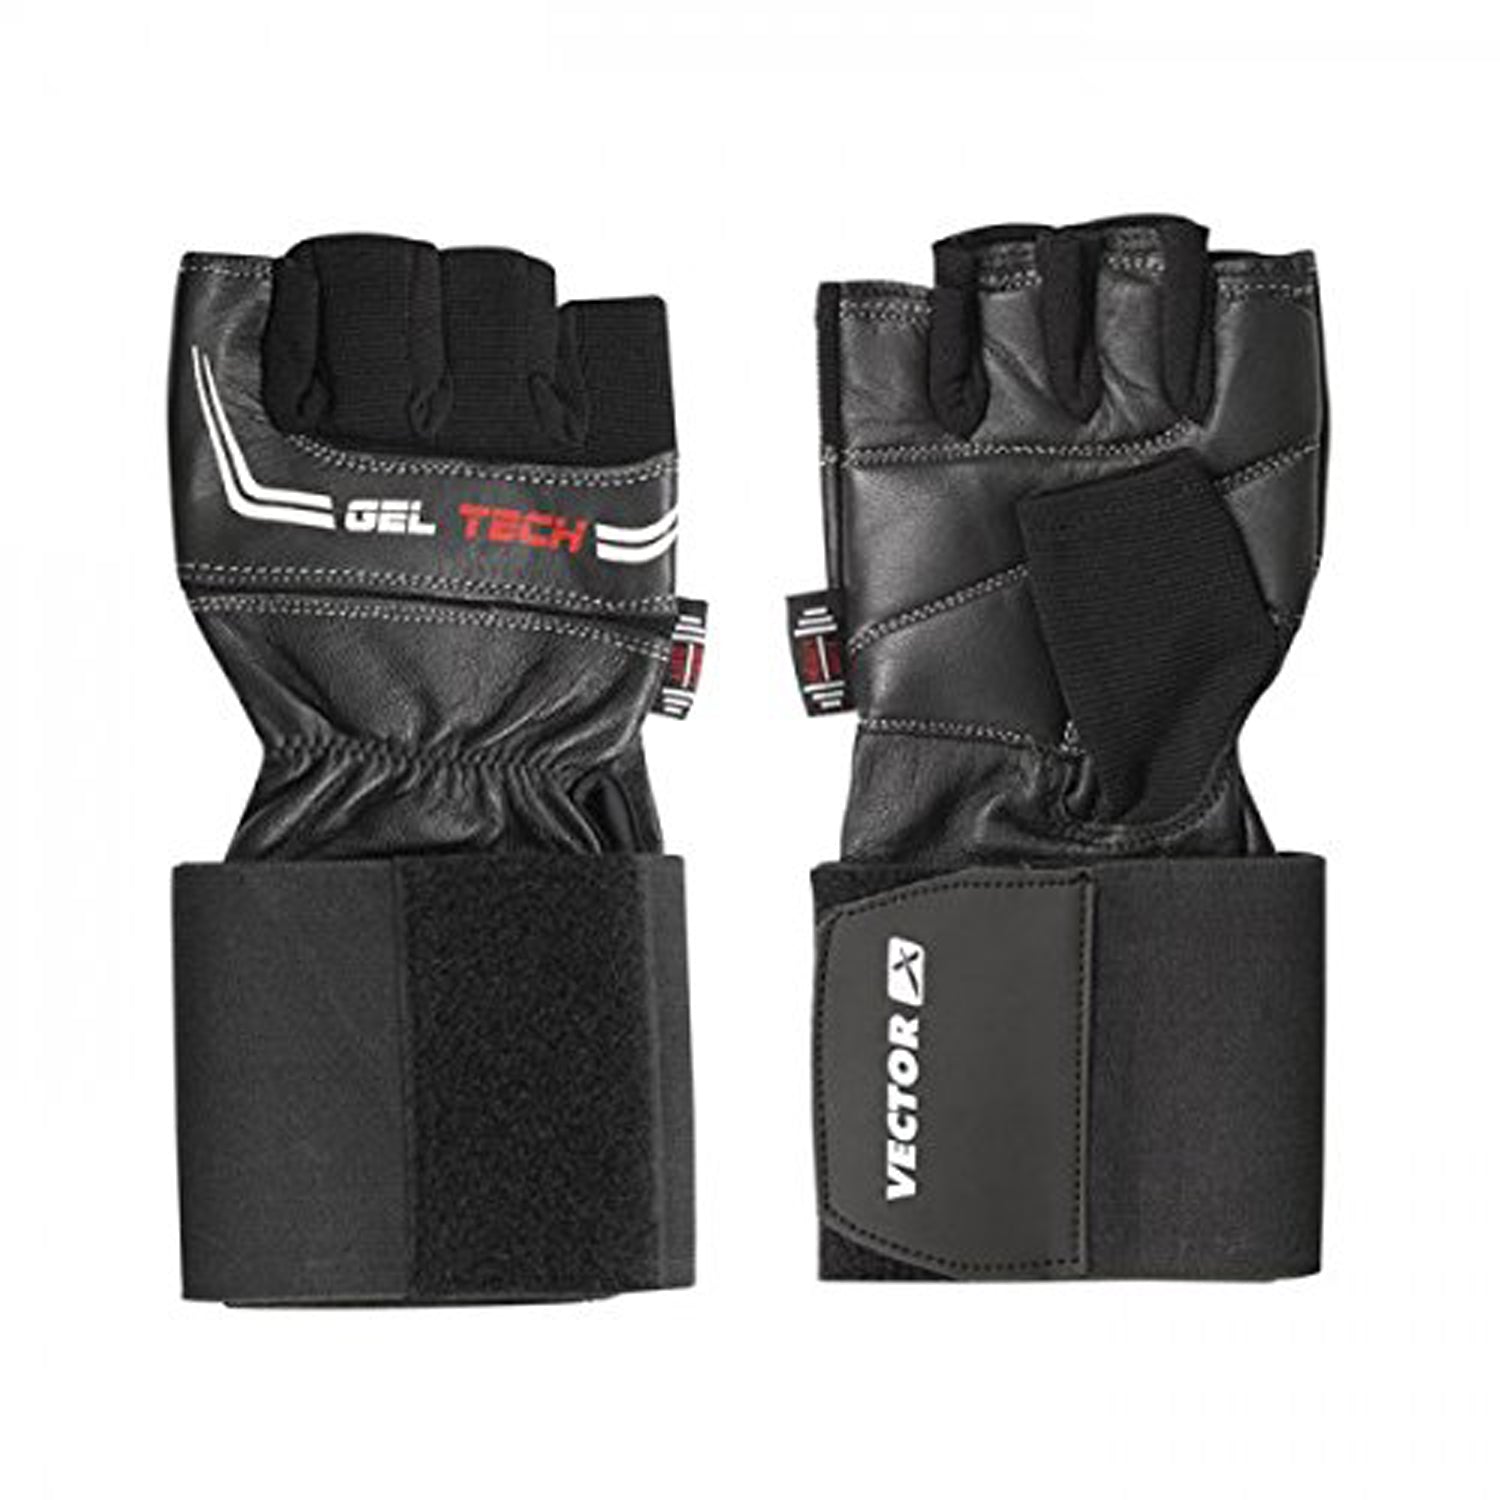 Vector X VX-1054 Gel Tech Fitness Gloves - Best Price online Prokicksports.com